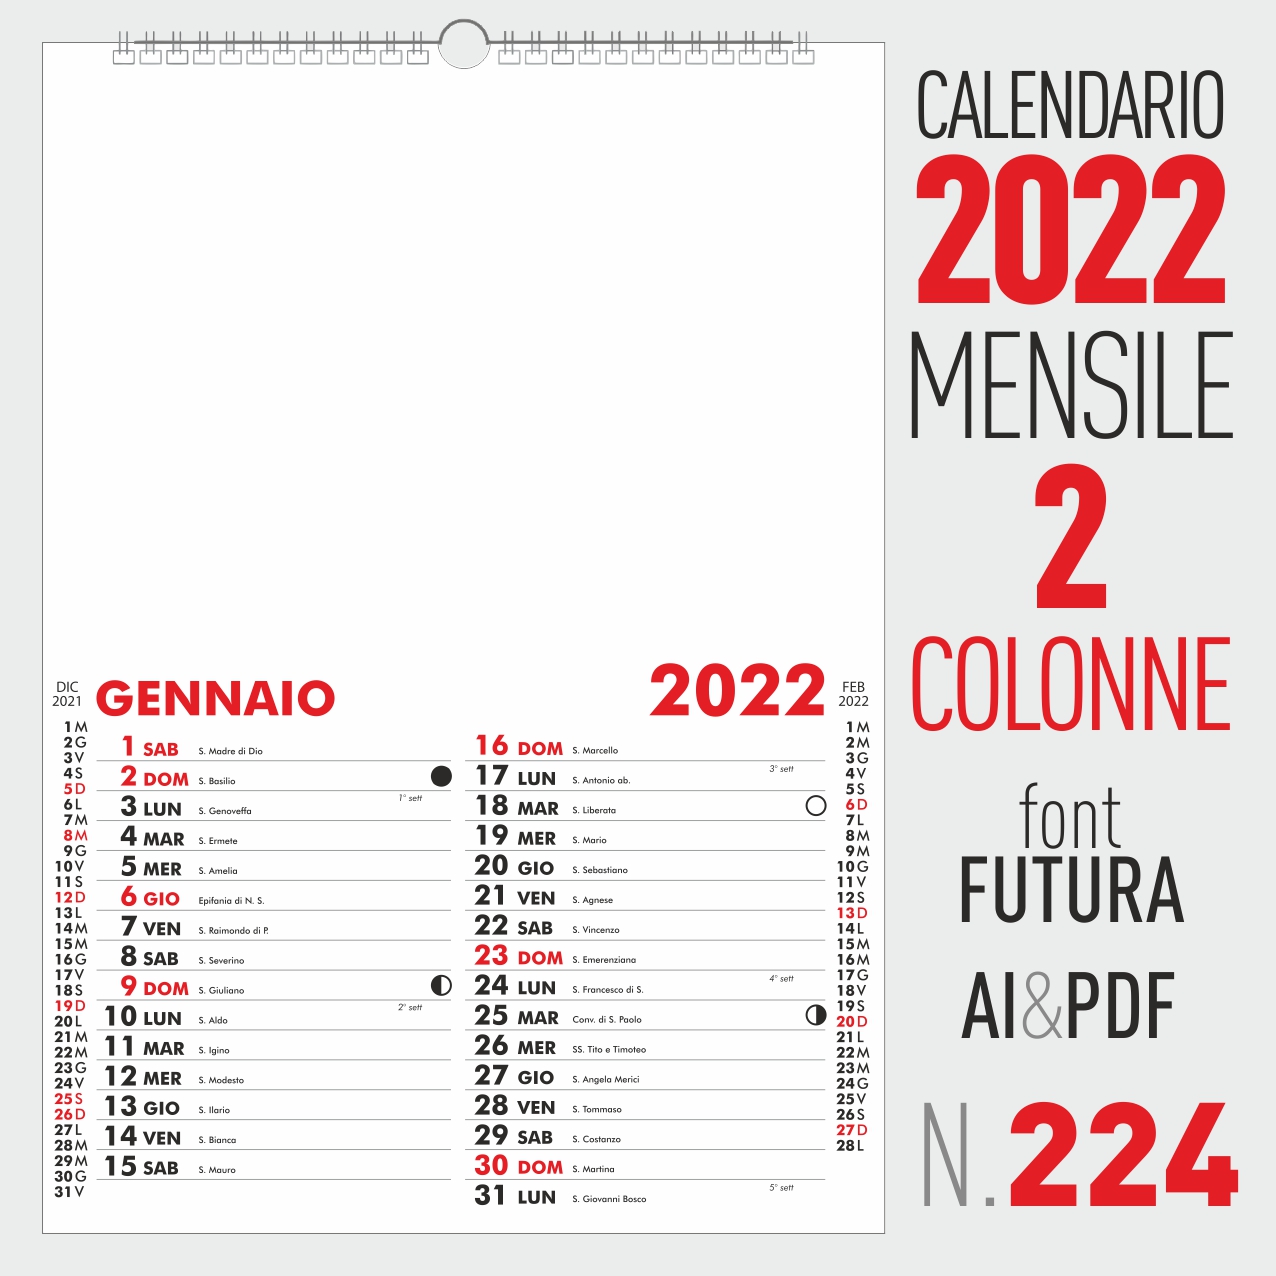 CALENDARIO 2022 MENSILE